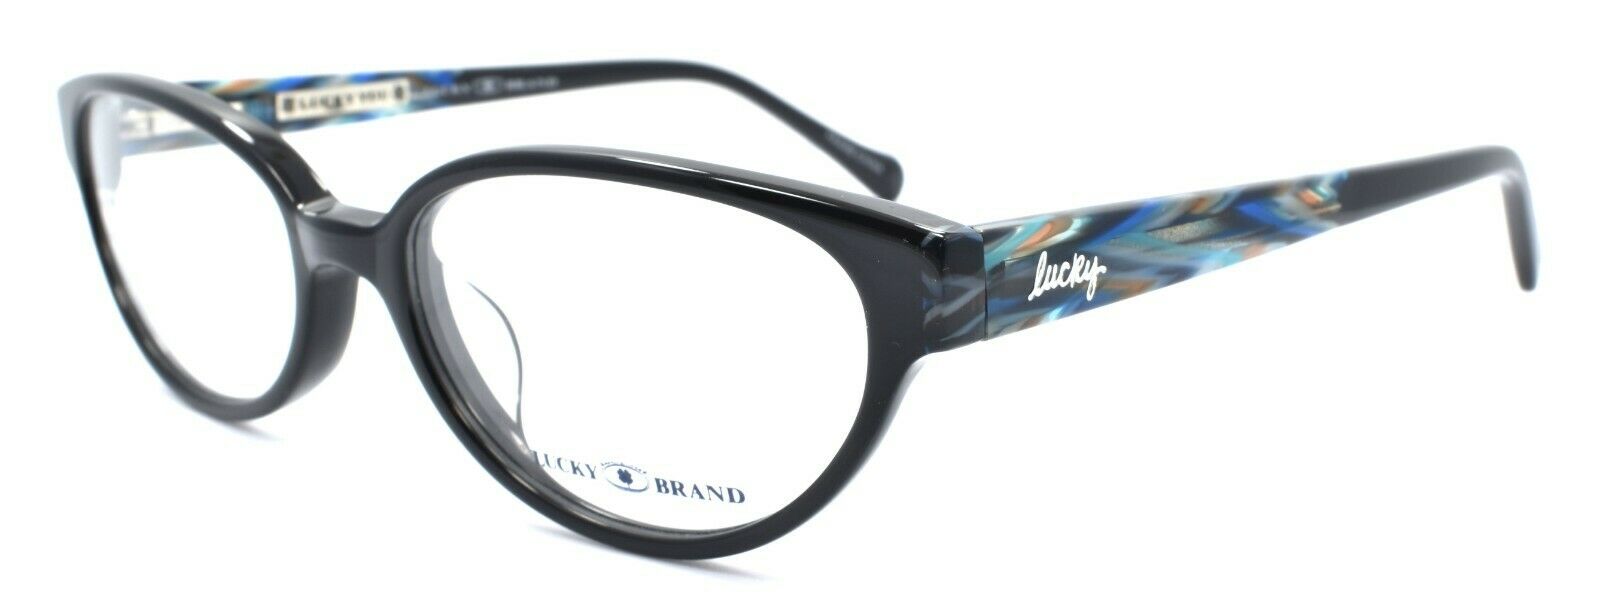 1-LUCKY BRAND Sunrise UF Women's Eyeglasses Frames 52-17-140 Black + CASE-751286256604-IKSpecs